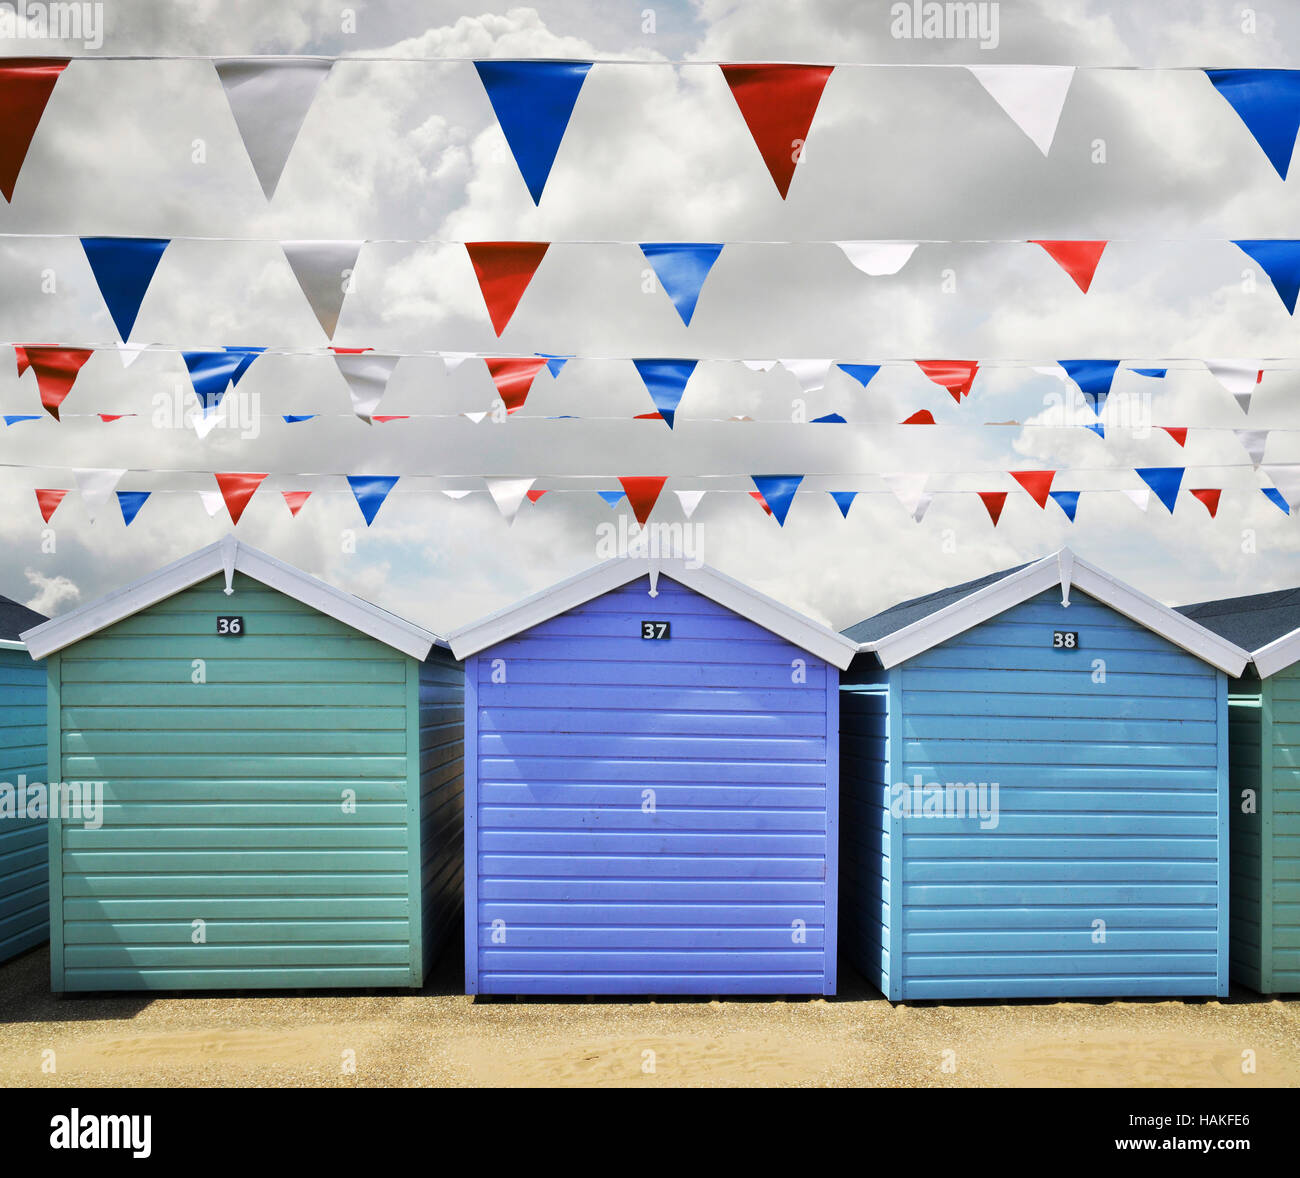 Reihe von Strandhütten und Wimpel Fahnen in Weston Super Mare, England, Vereinigtes Königreich Stockfoto